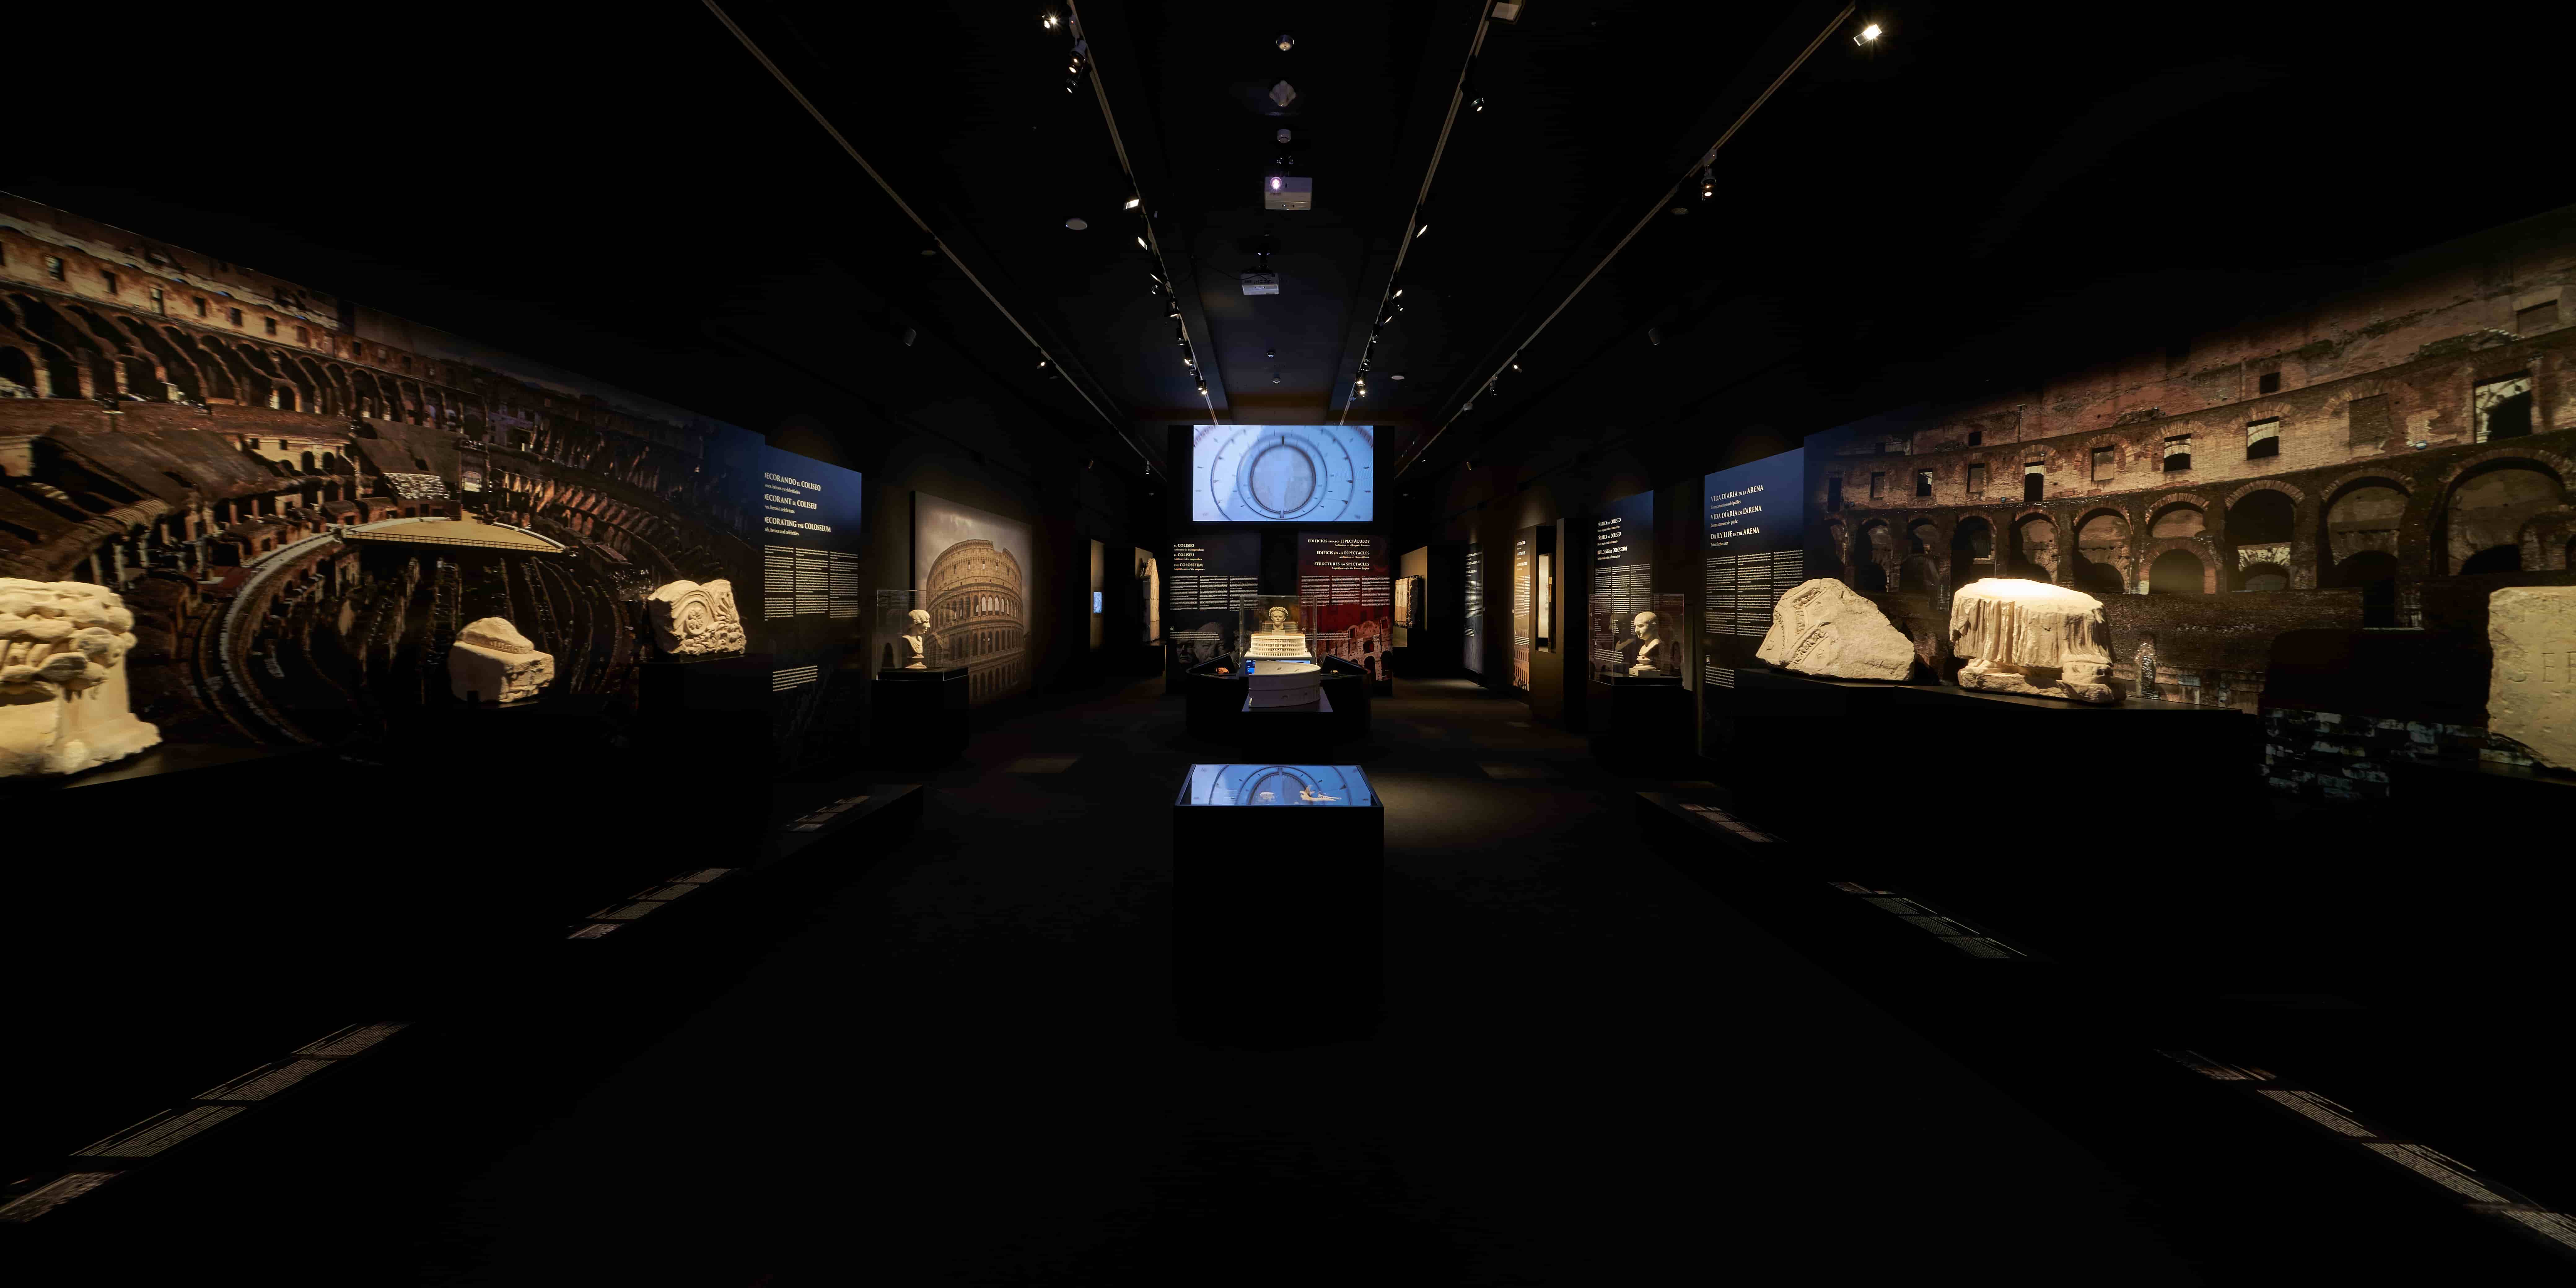 Una exposición descubre en Alicante a los gladiadores con importantes piezas del Coliseo romano